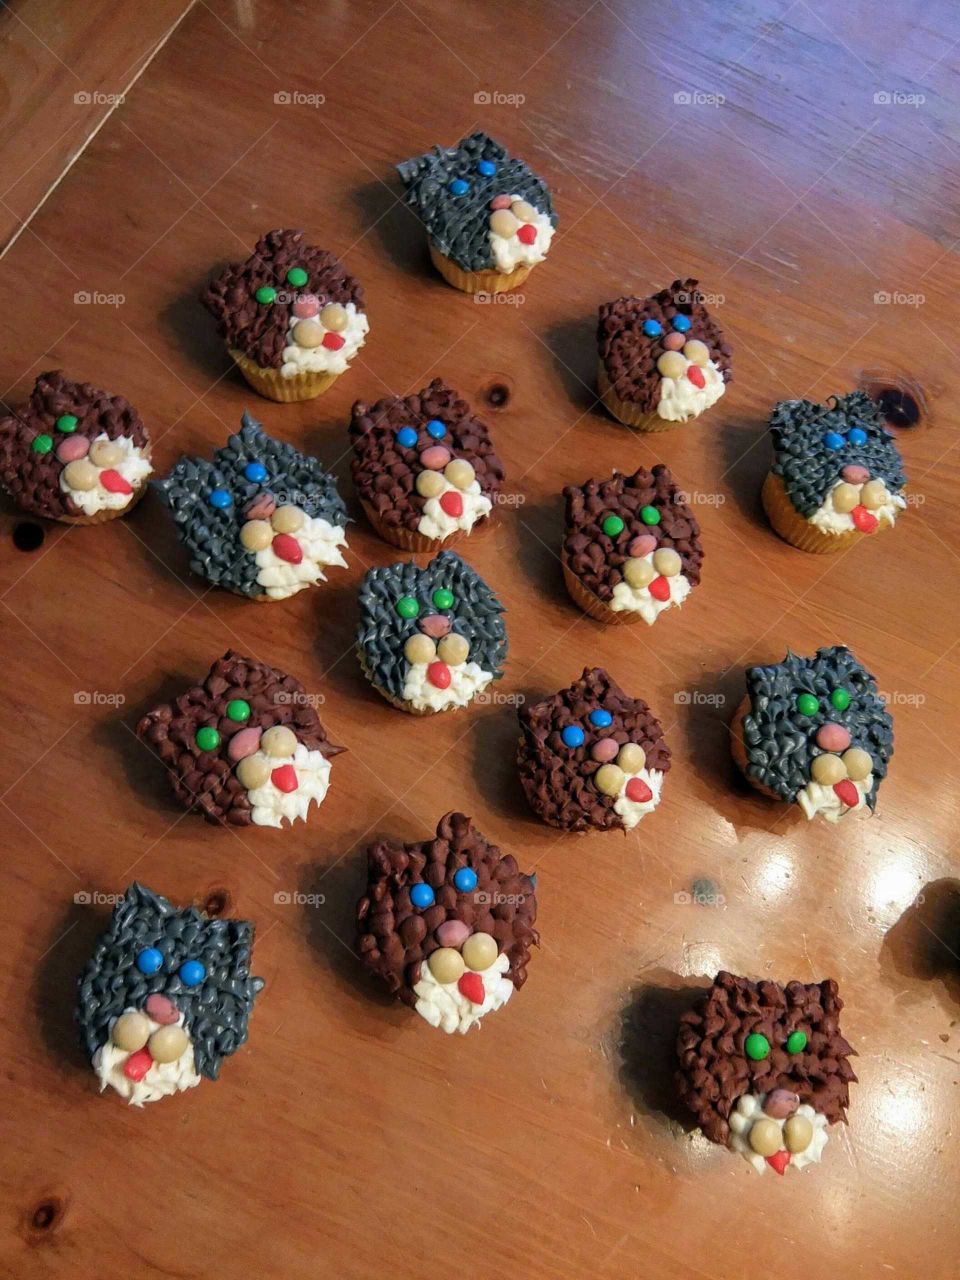 Cat cupcakes